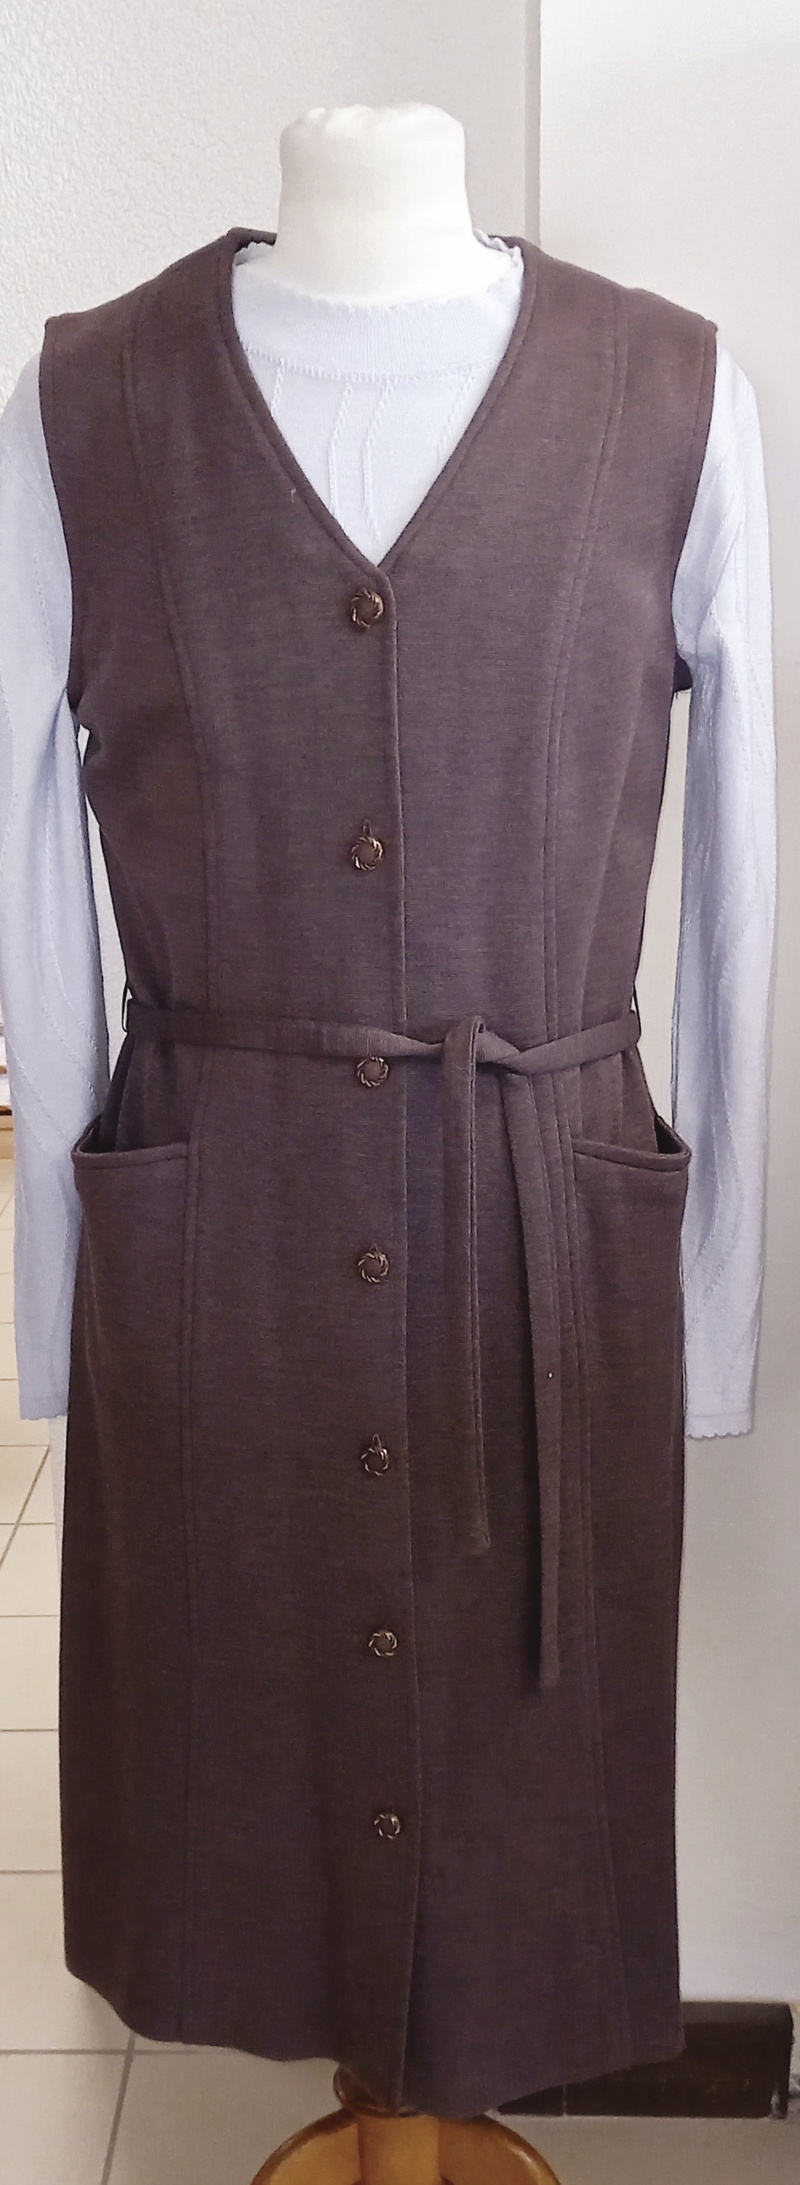 Robe chasuble chaude pour séniors collection Griffon - Robes pour femmes - Autrement libre - Voir en grand